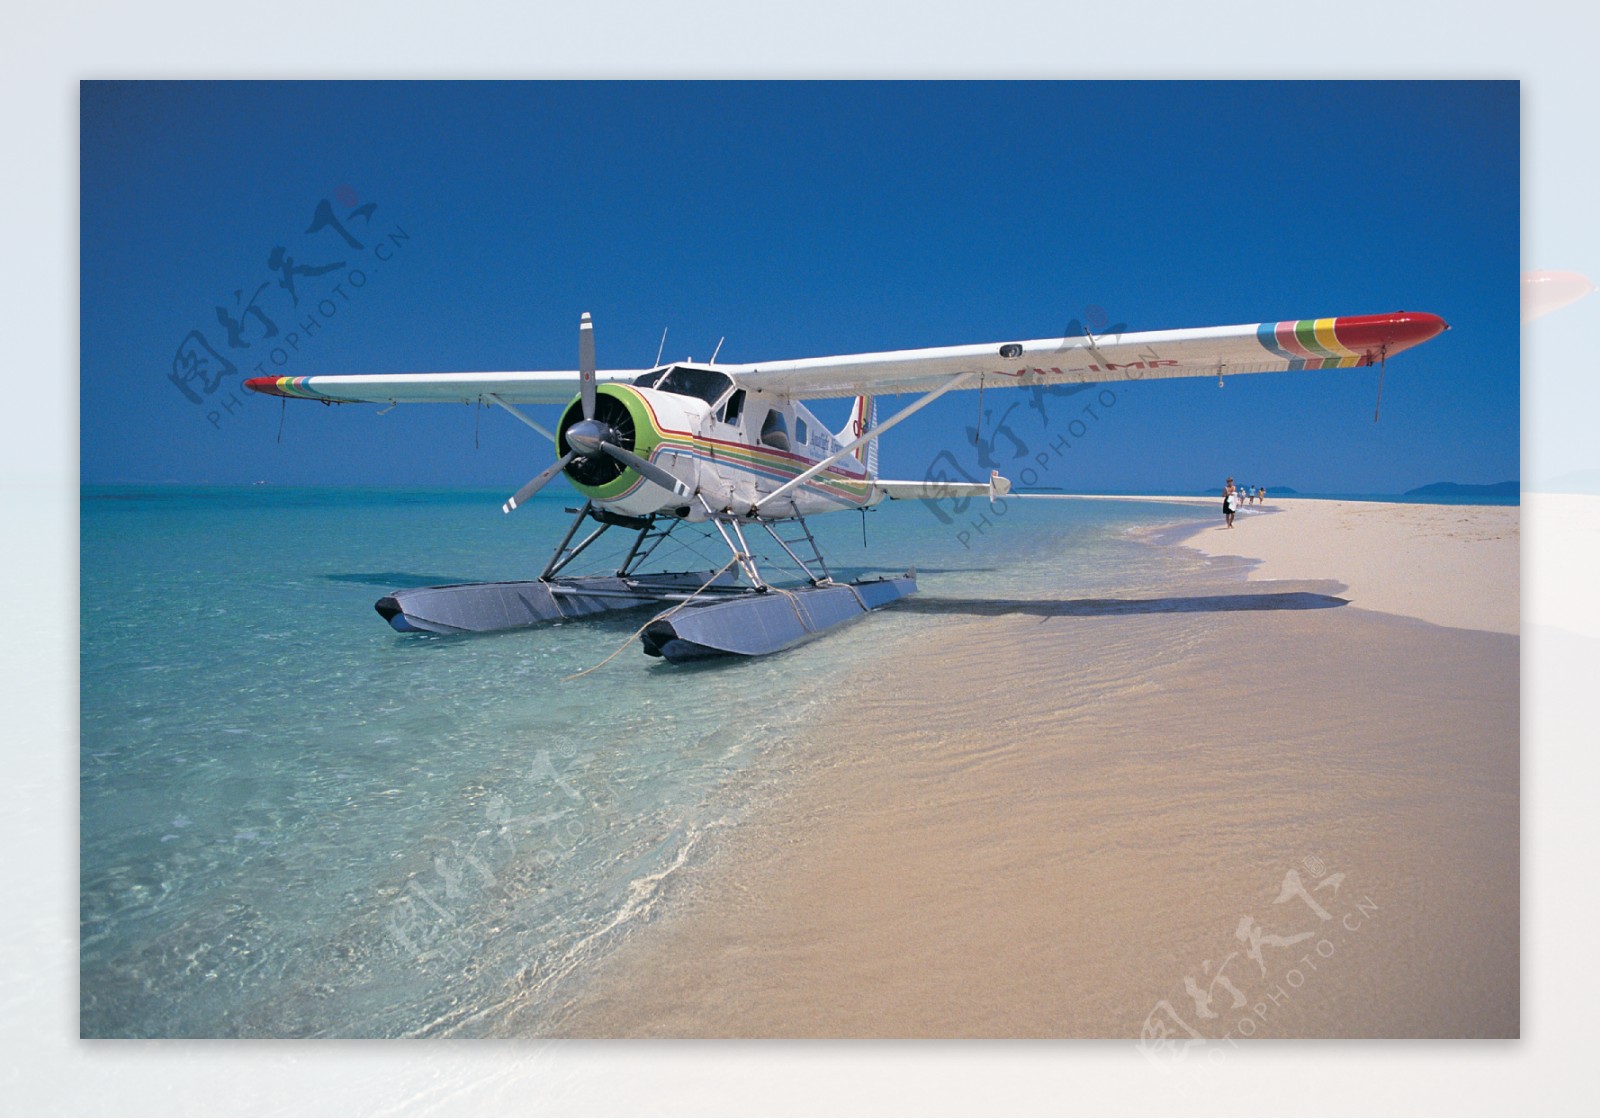 白沙天堂水上飞机近景图片